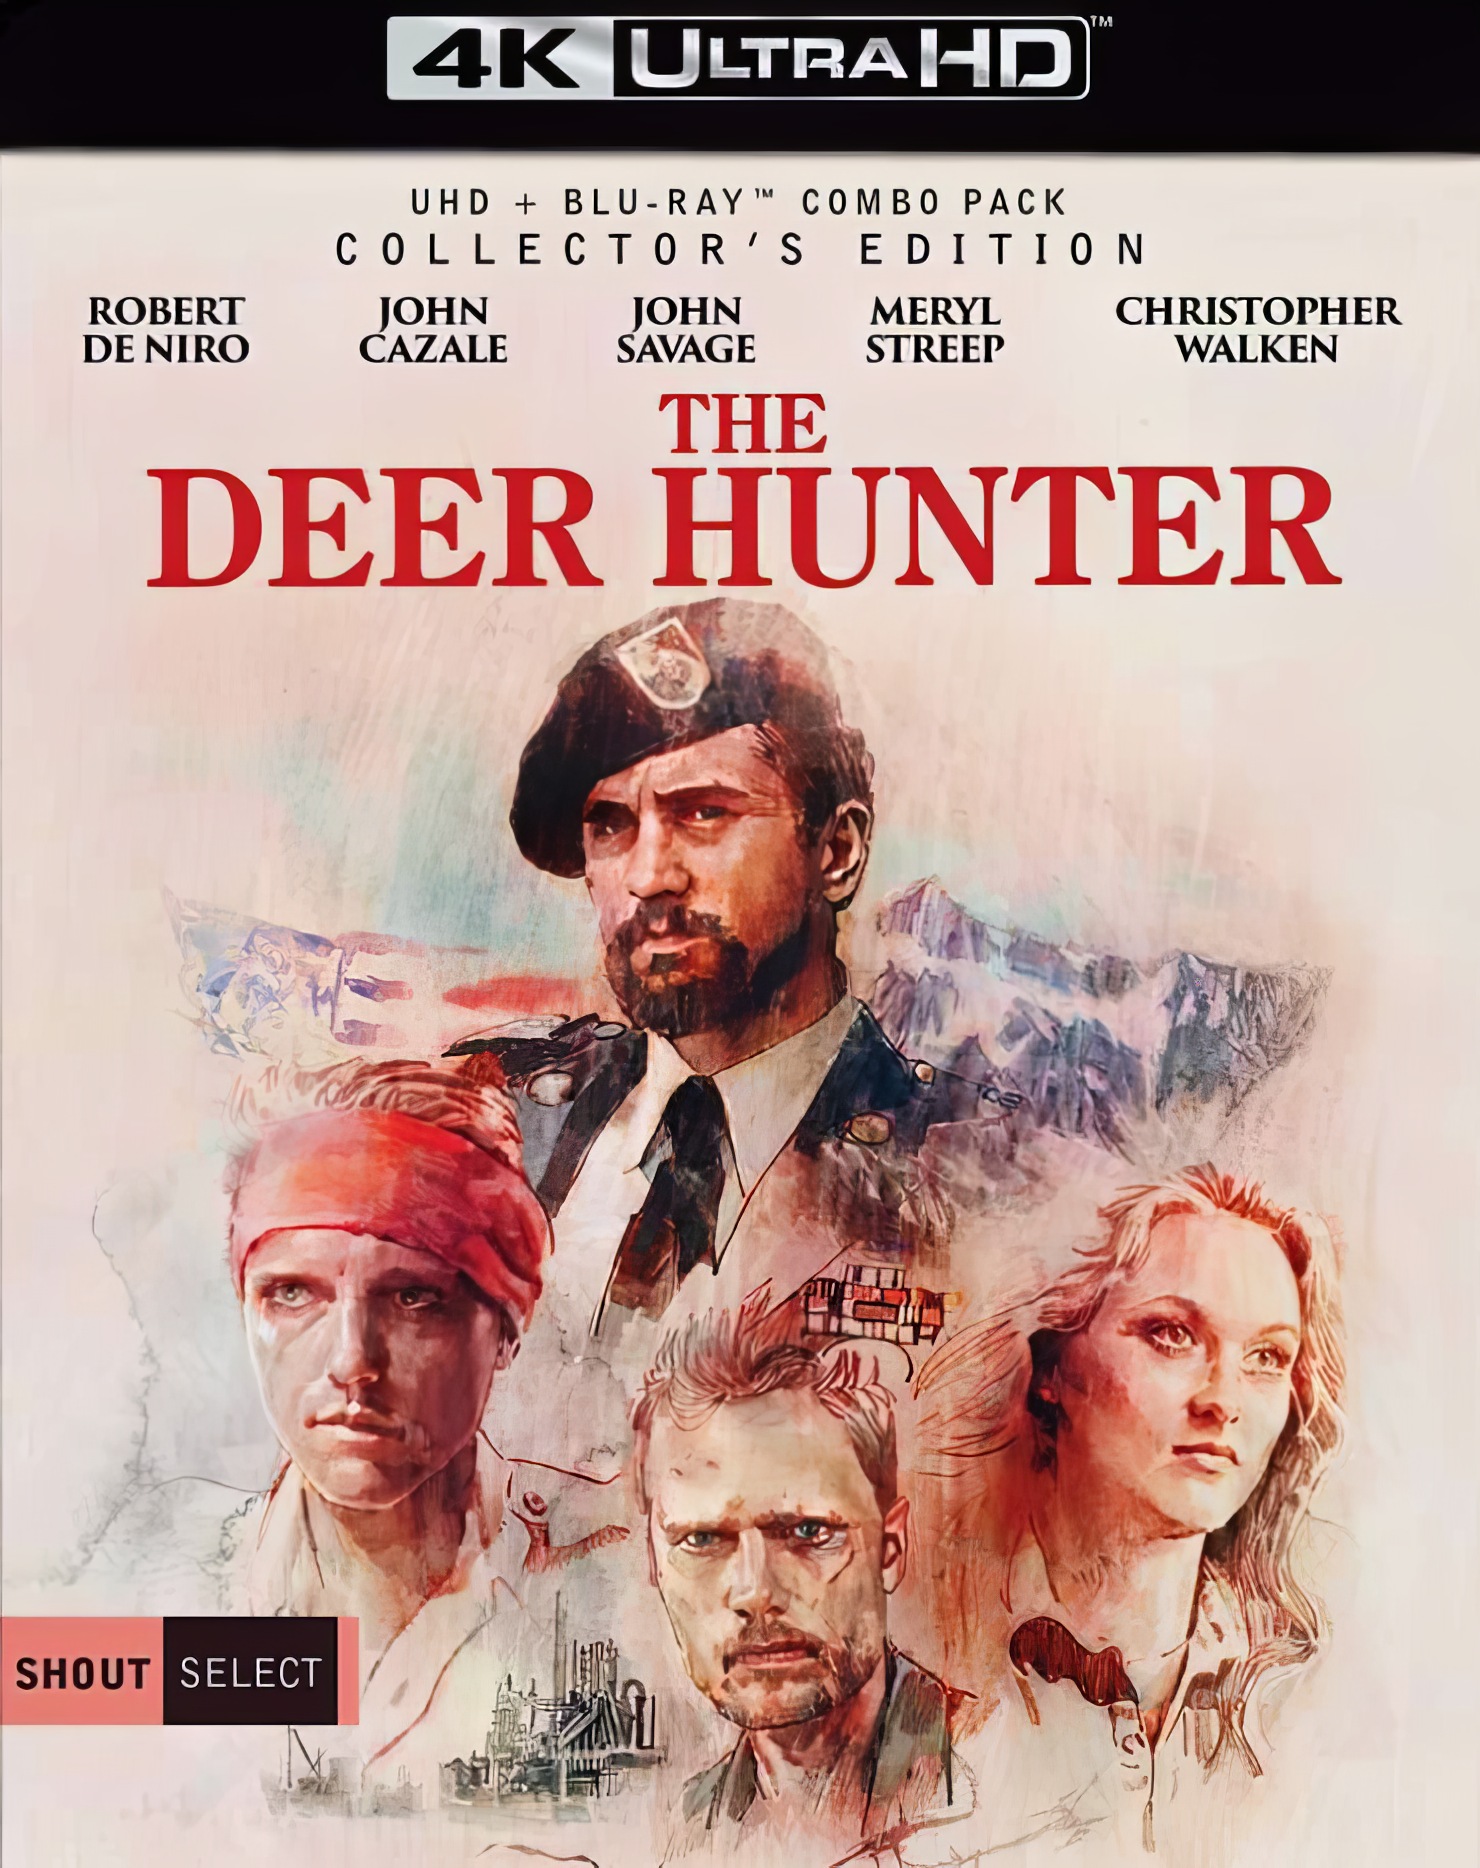 The Deer Hunter (1978) - 4K HDR H265 - Topaz enhanced - NLsub